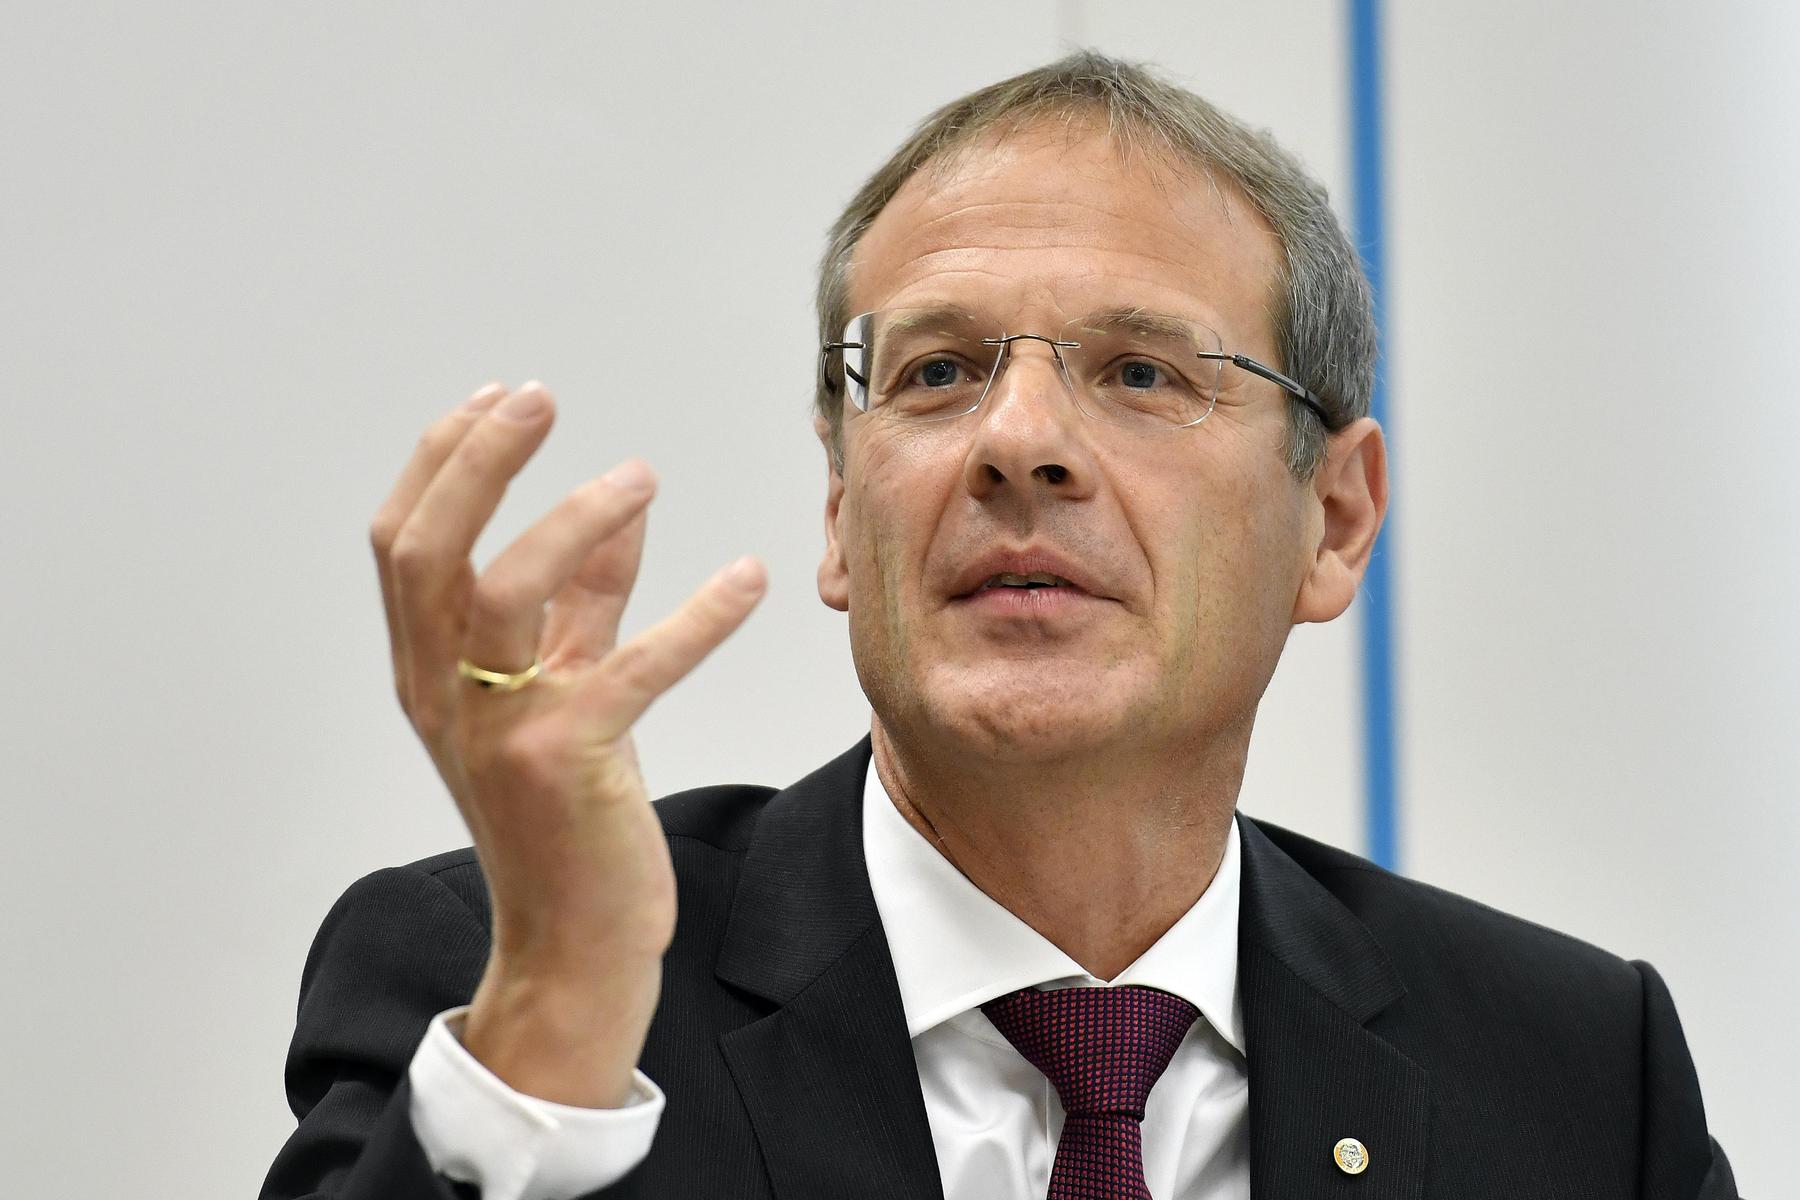 Österreich nicht mehr EU-beitrittsfähig? - „Das ist keinesfalls so“